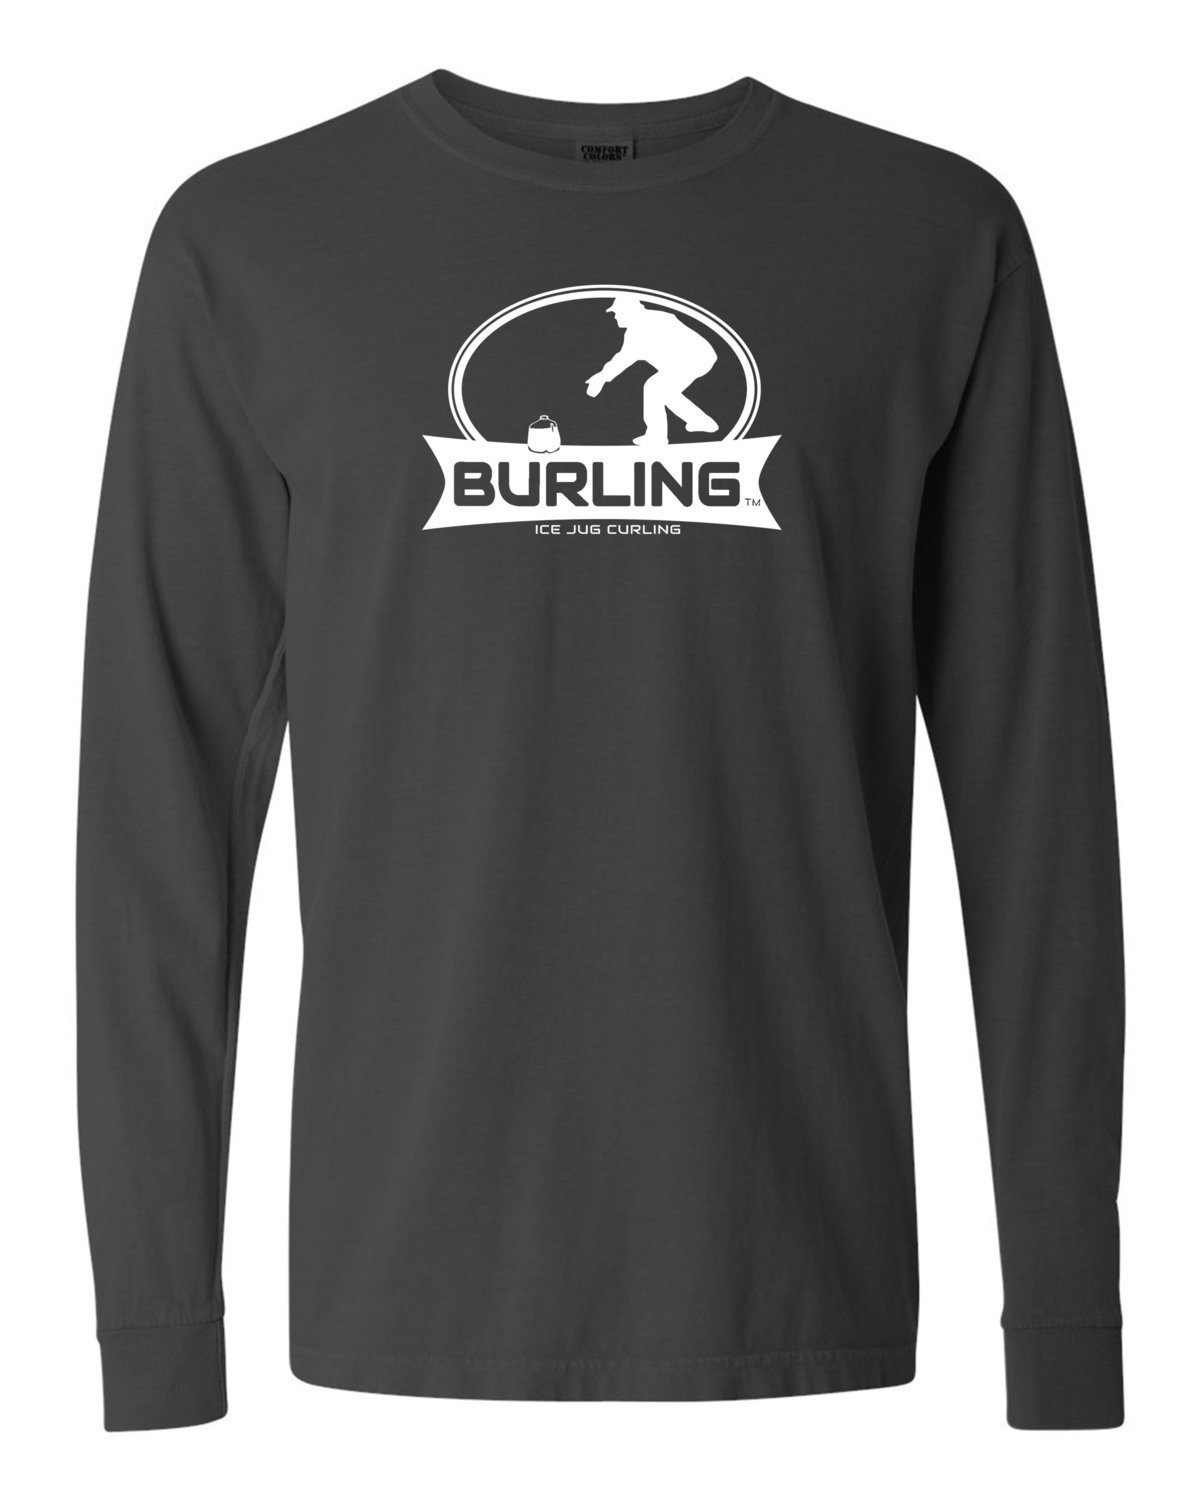 Burling Men's Charcoal Grey Long Sleeve T-shirt